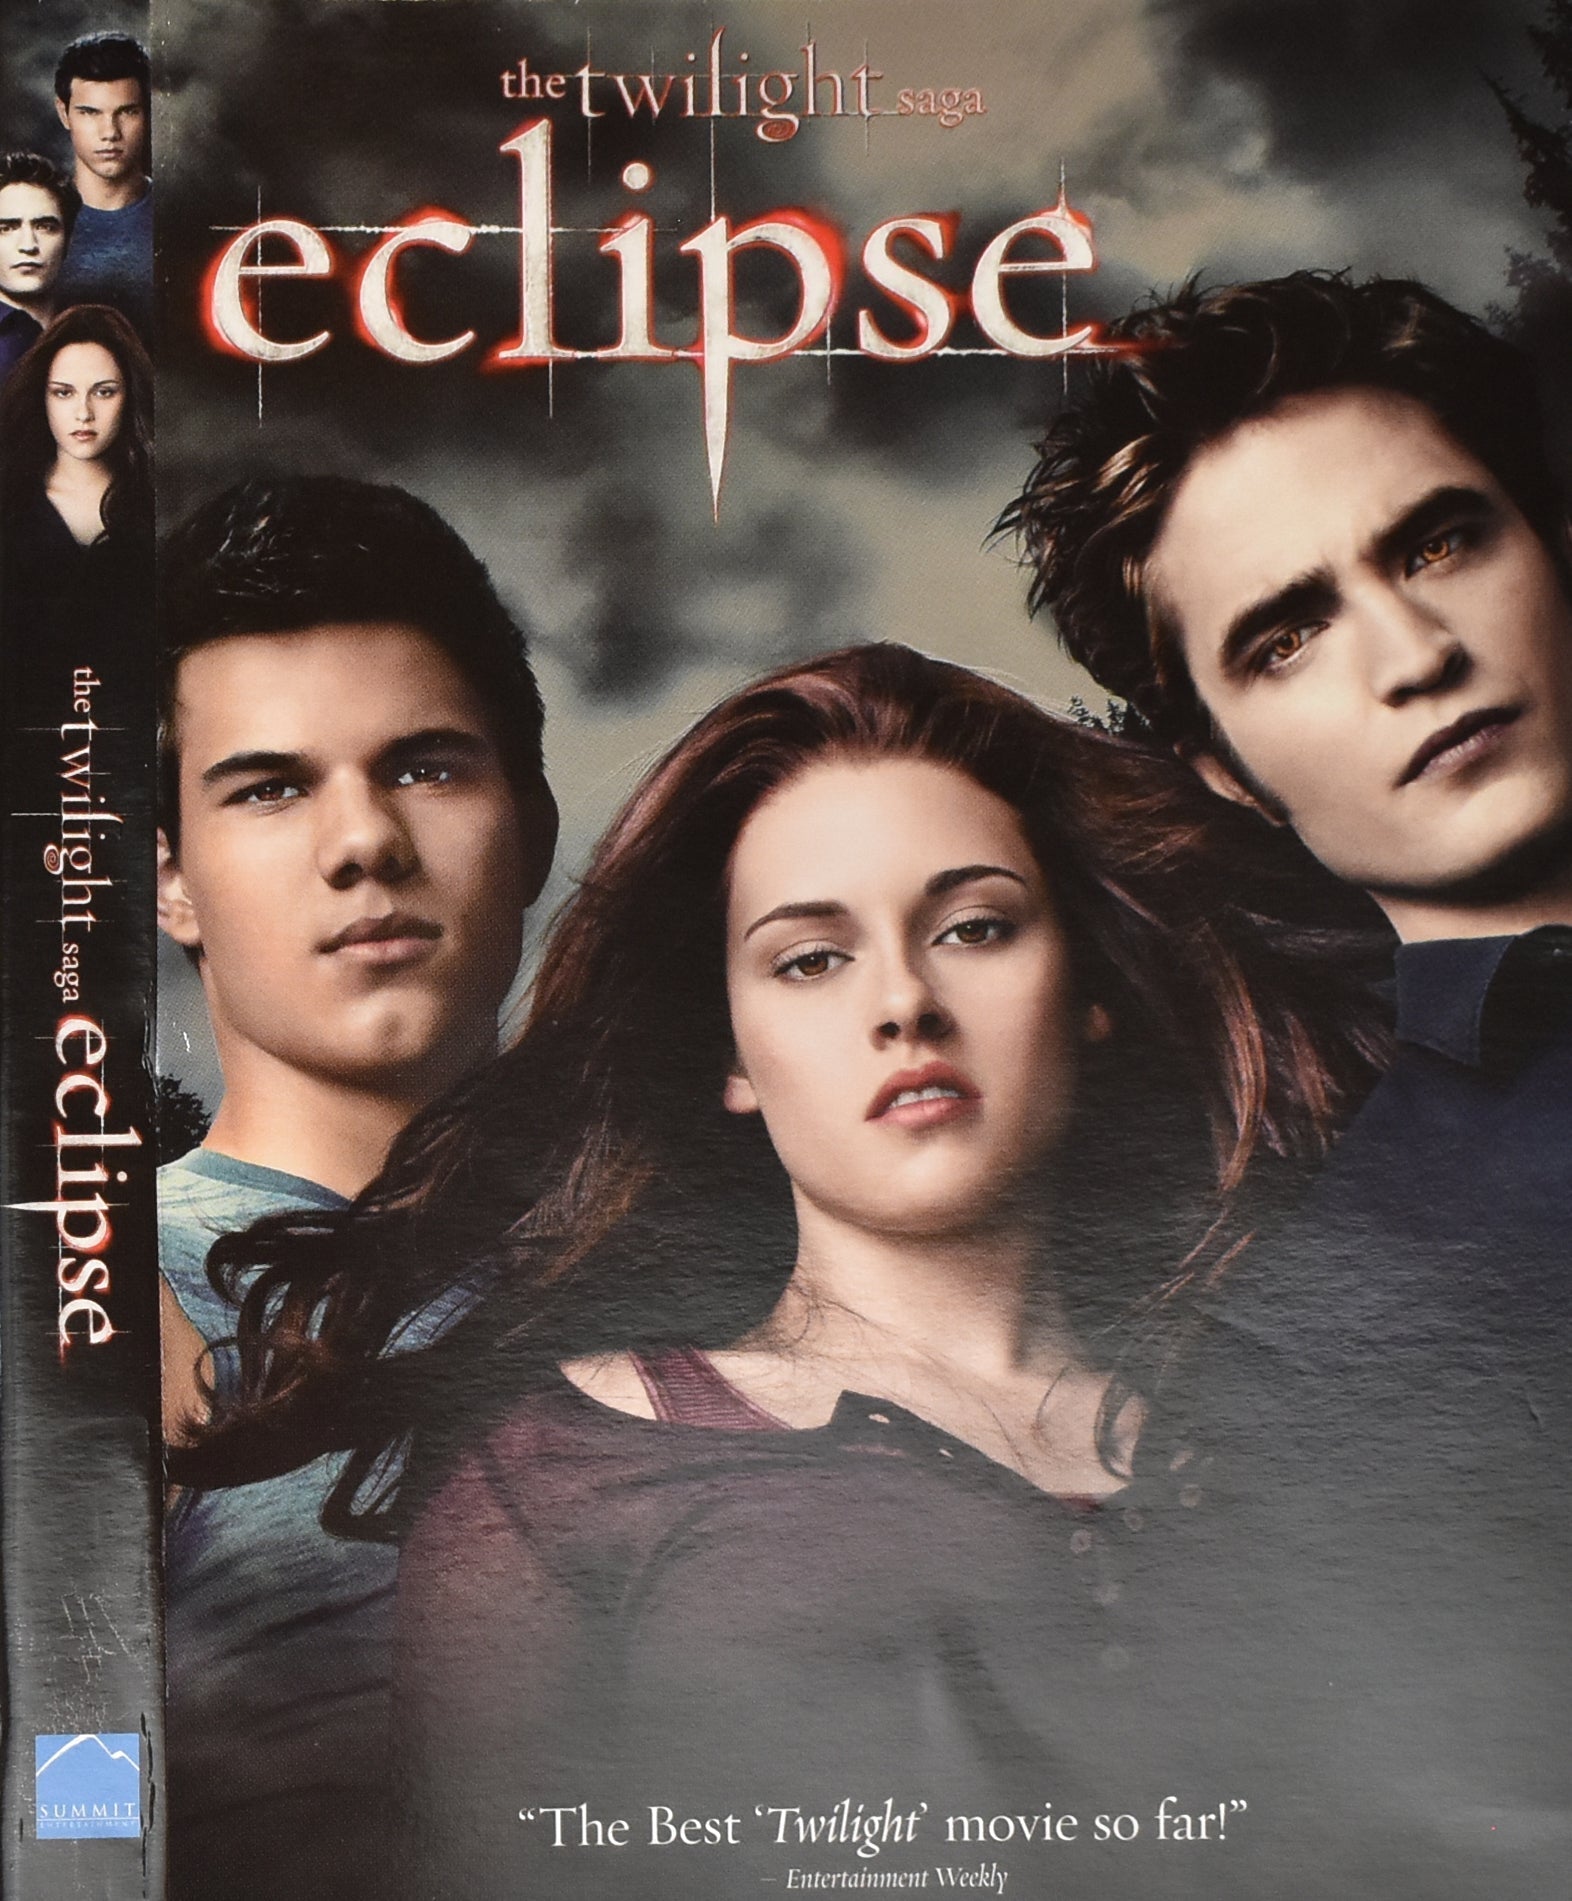 The Twilight Saga Eclipse Dvd Movie Used